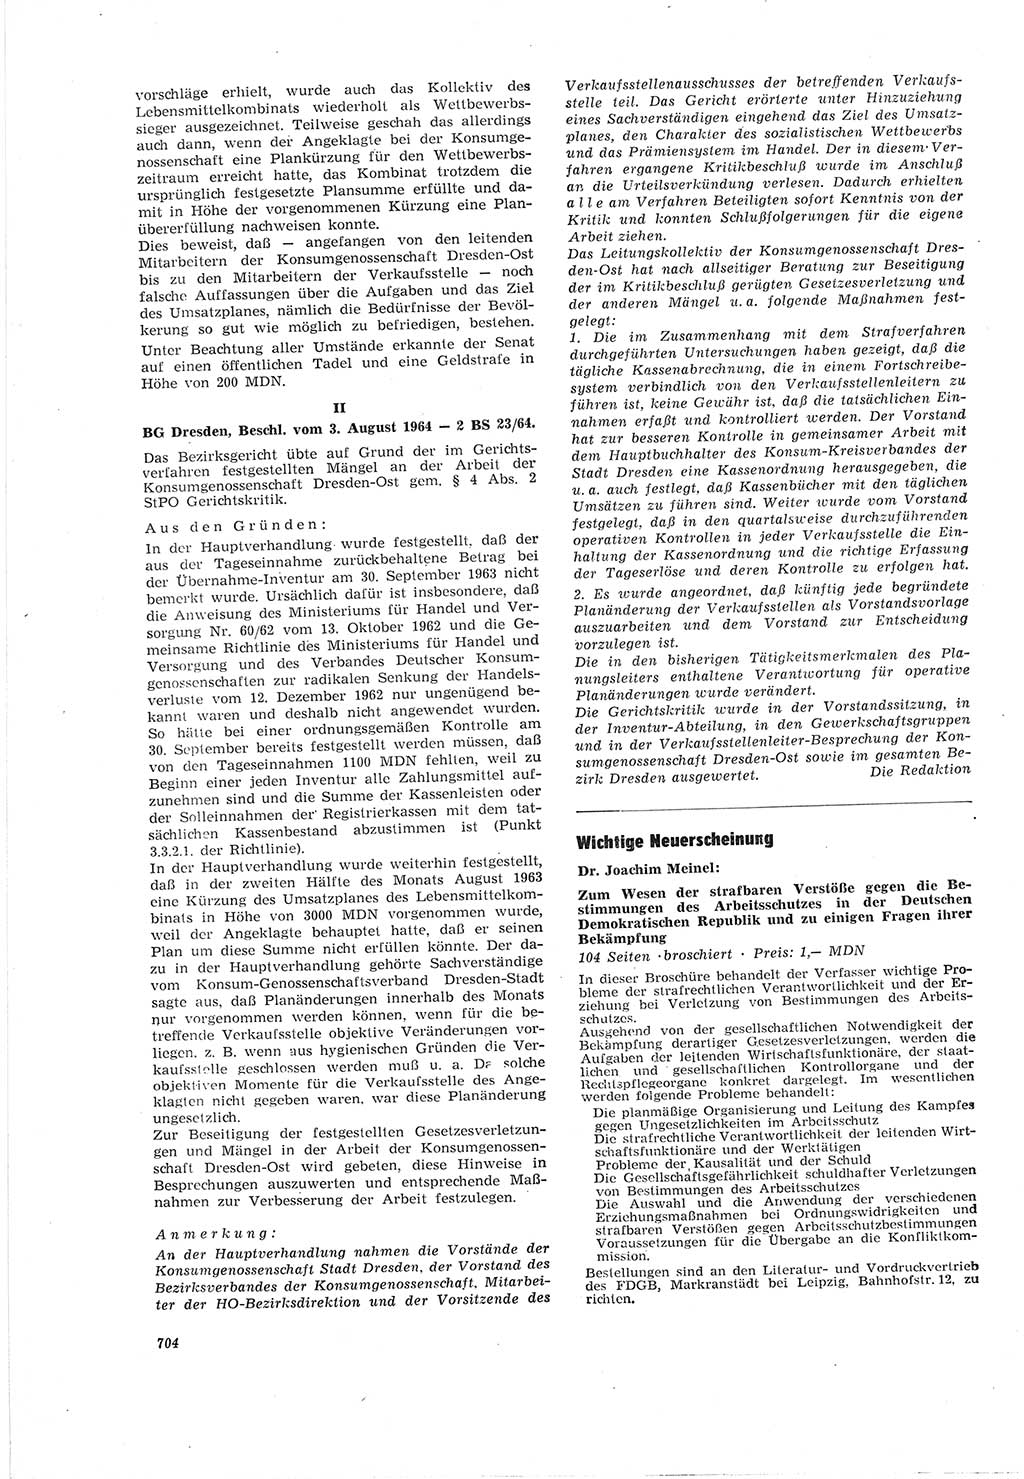 Neue Justiz (NJ), Zeitschrift für Recht und Rechtswissenschaft [Deutsche Demokratische Republik (DDR)], 18. Jahrgang 1964, Seite 704 (NJ DDR 1964, S. 704)